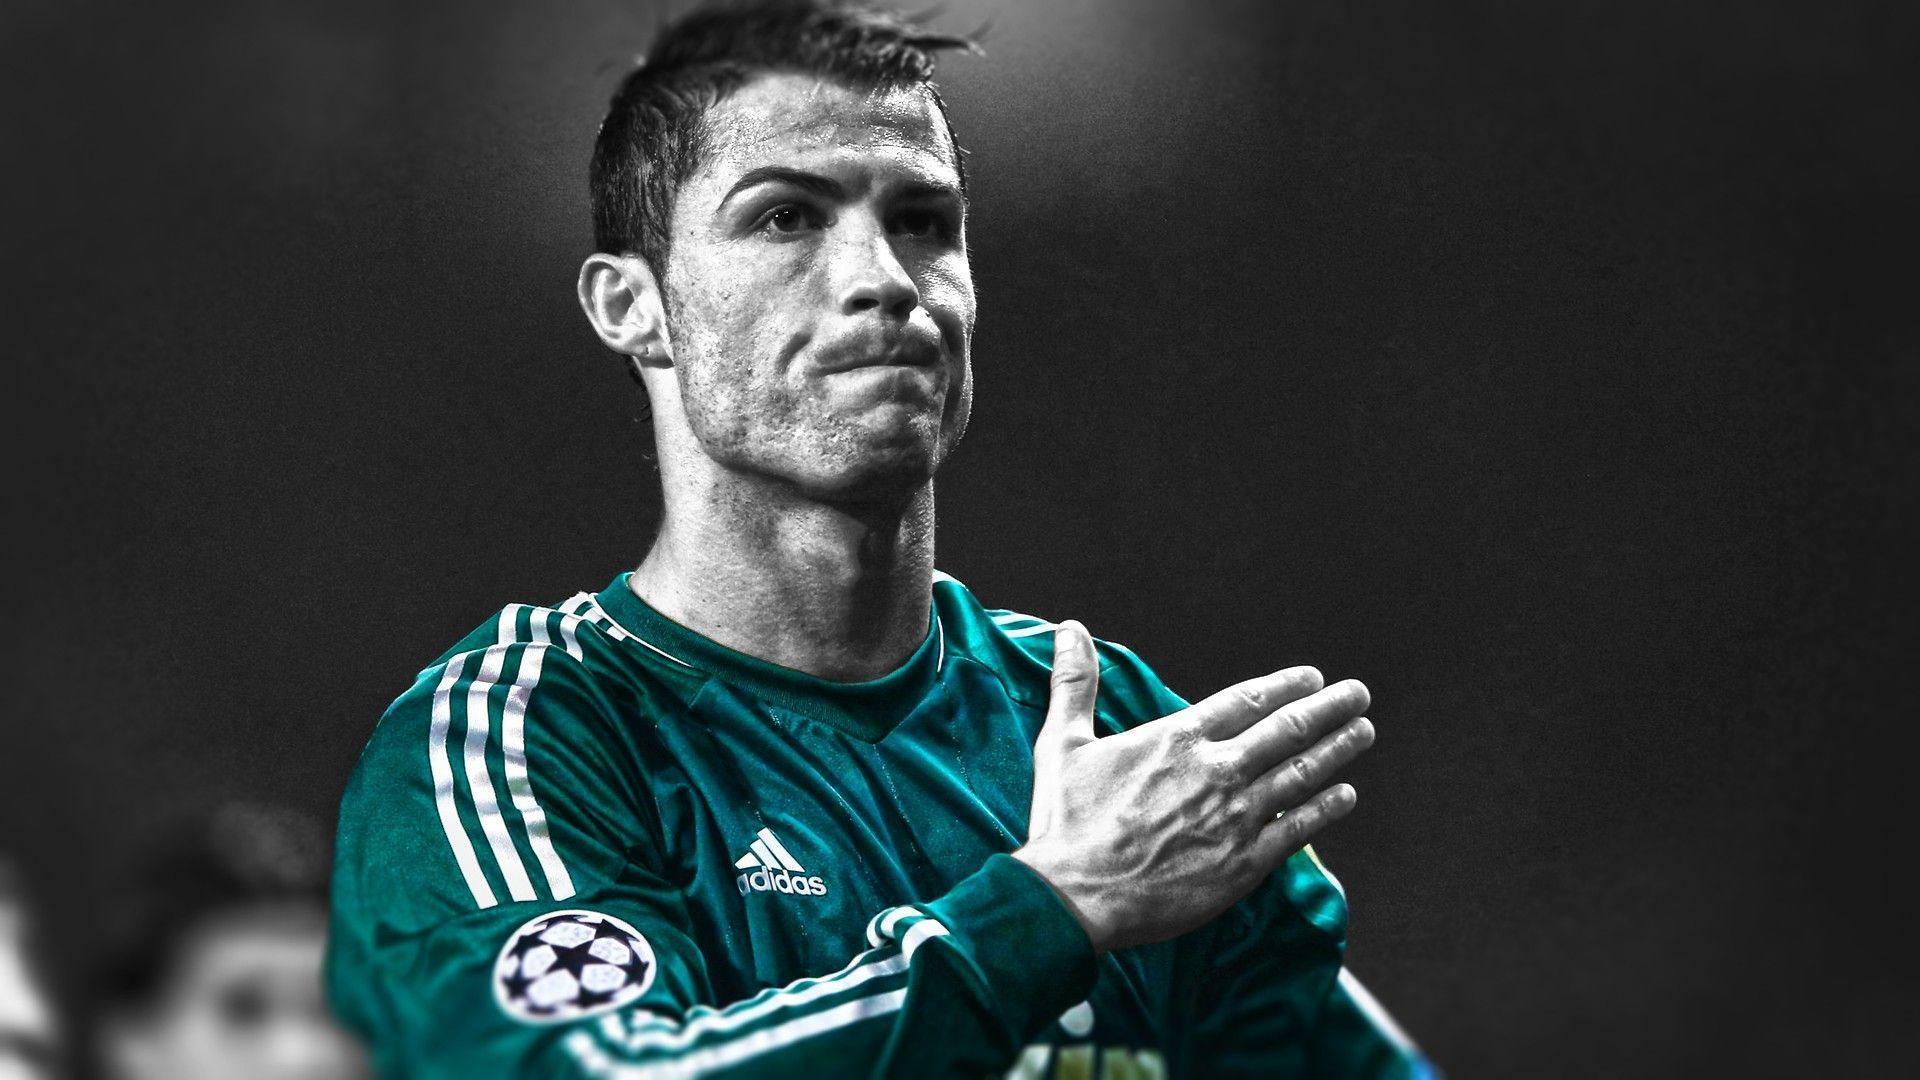 Cristiano Ronaldo Wallpaper 2019 download